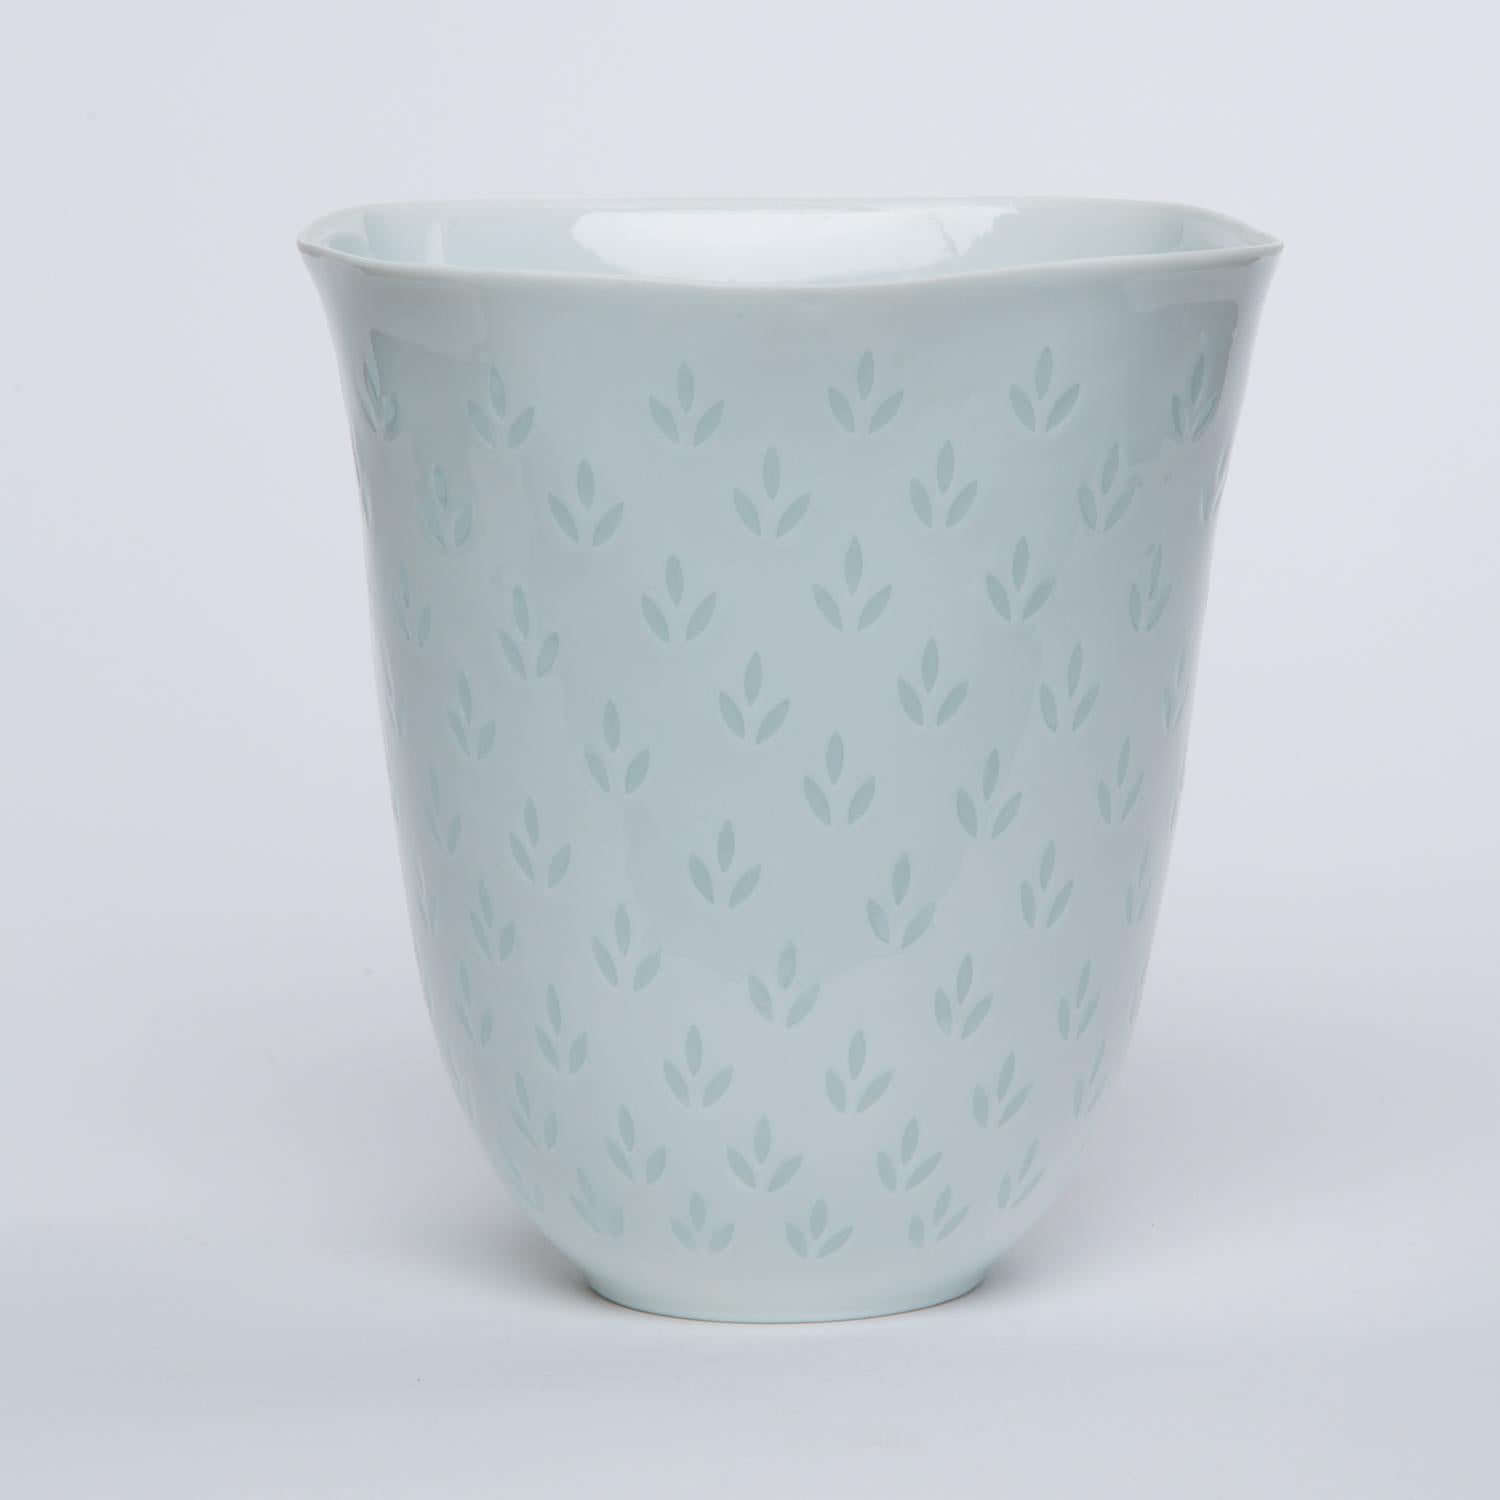 Finnish Fluted Porcelain Vase by Freidl Holzer-Kjellberg for Arabia of Finland